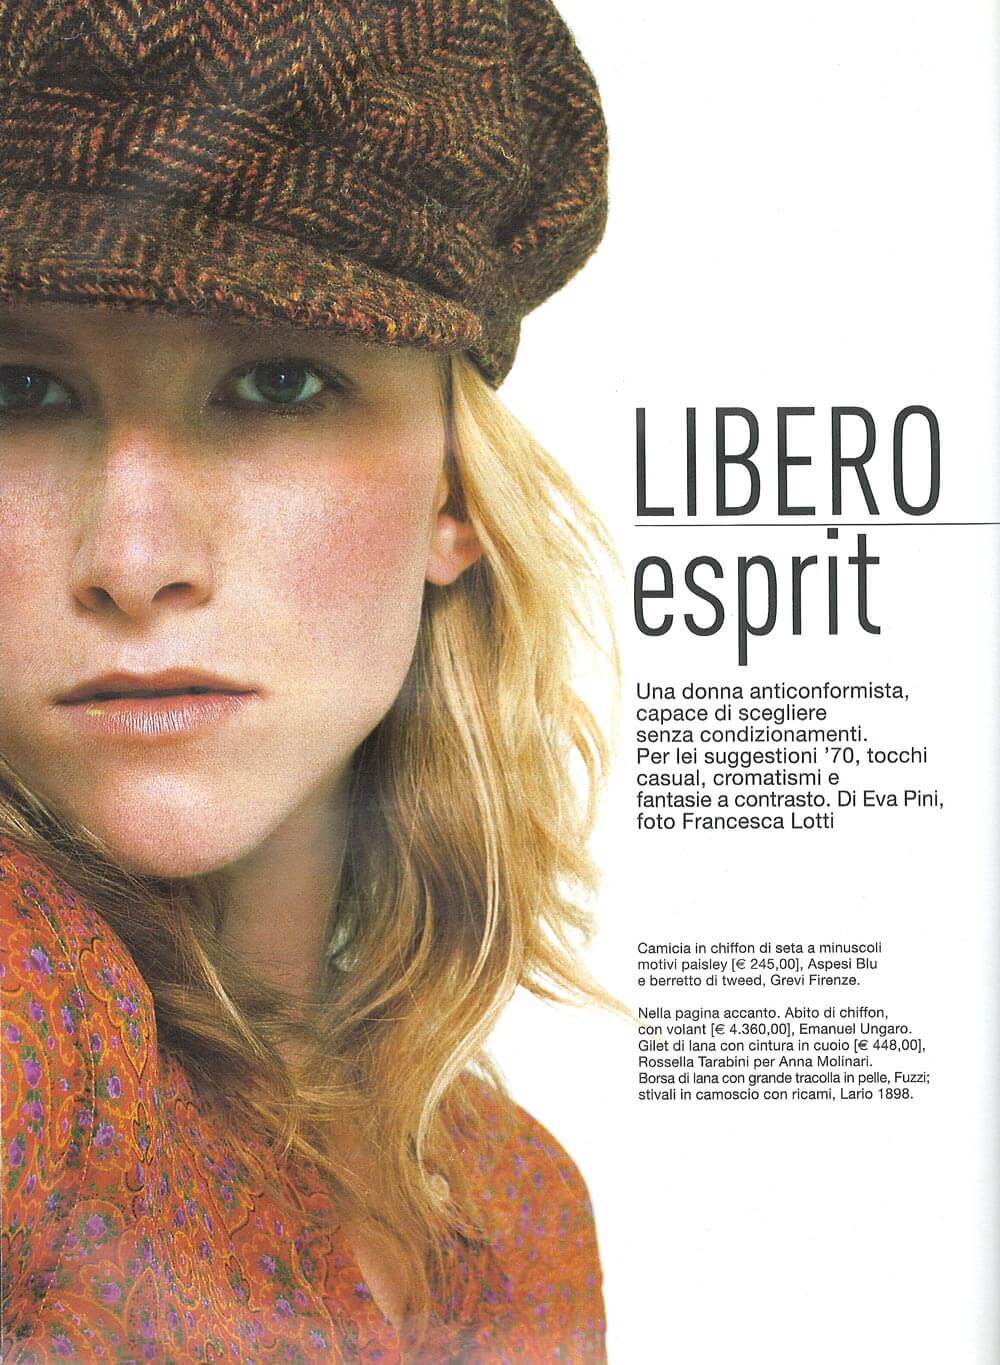 Anna ottobre 2002 - Servizio di Eva Pini, foto Francesca Lotti - camicia in chiffon di seta Aspesi e berretto in tweed di Grevi Firenze